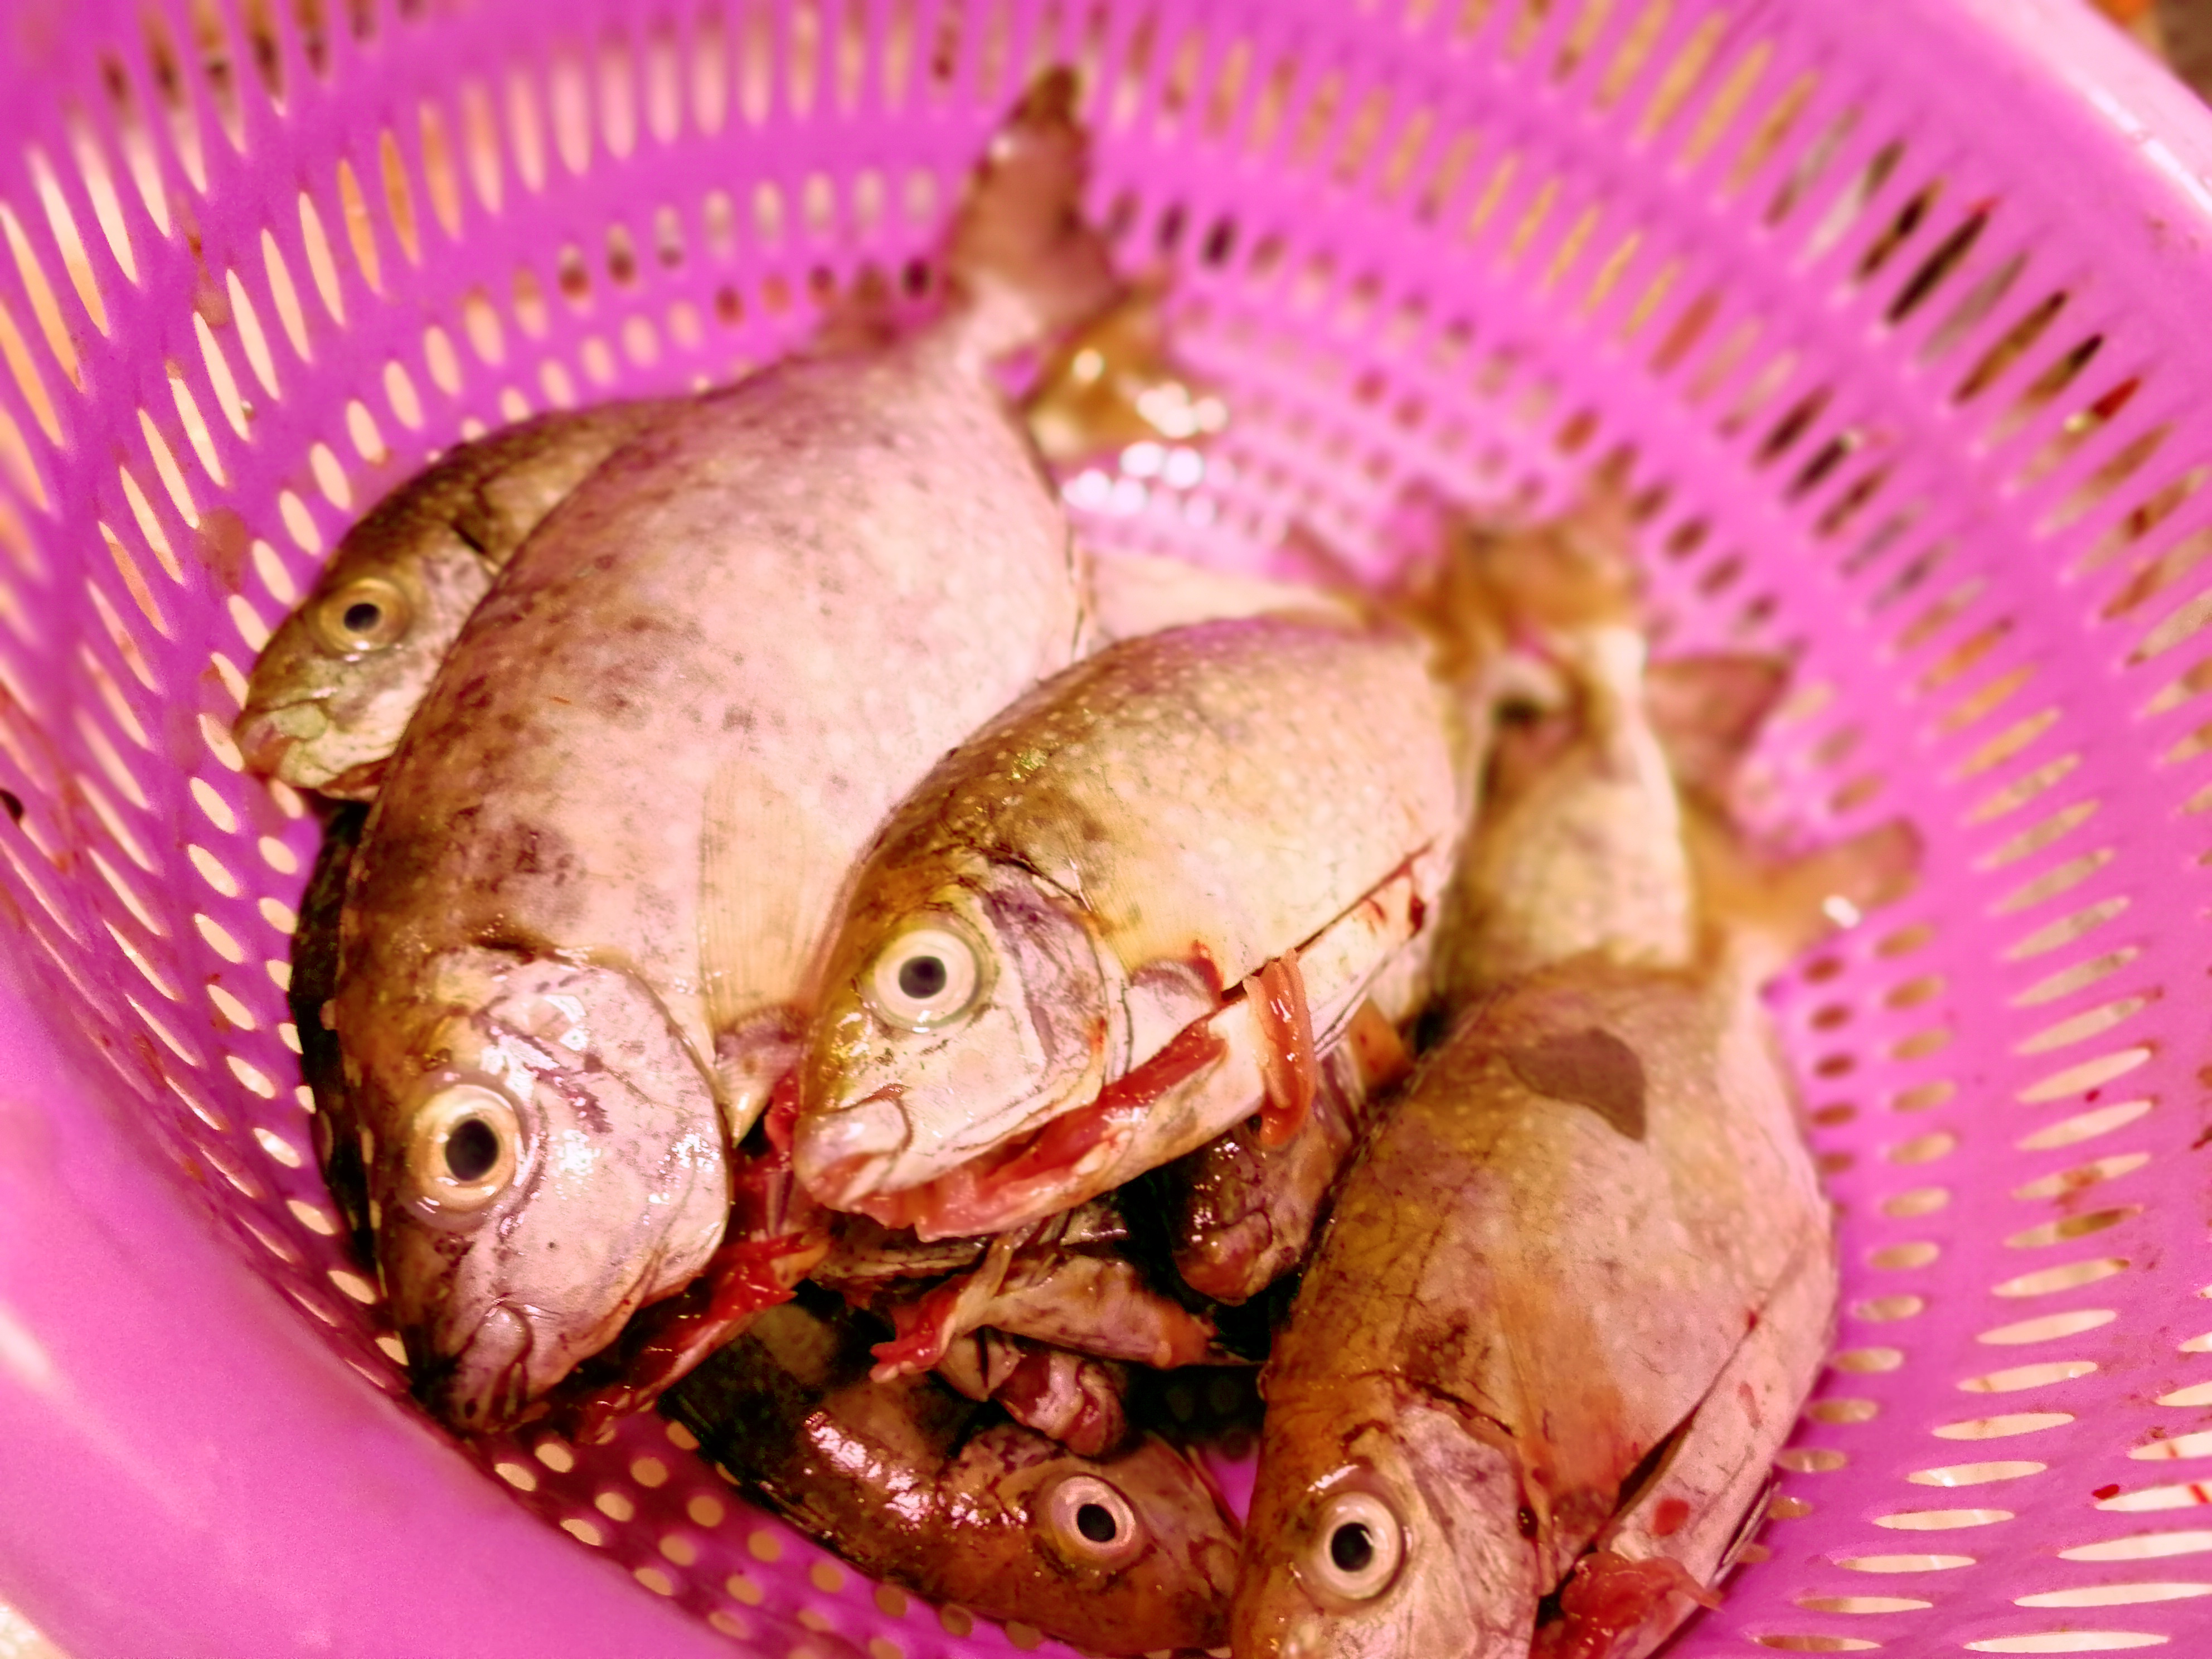 潮汕菜市场上常见到的几种海鱼,但还不够全,下次别买错了!